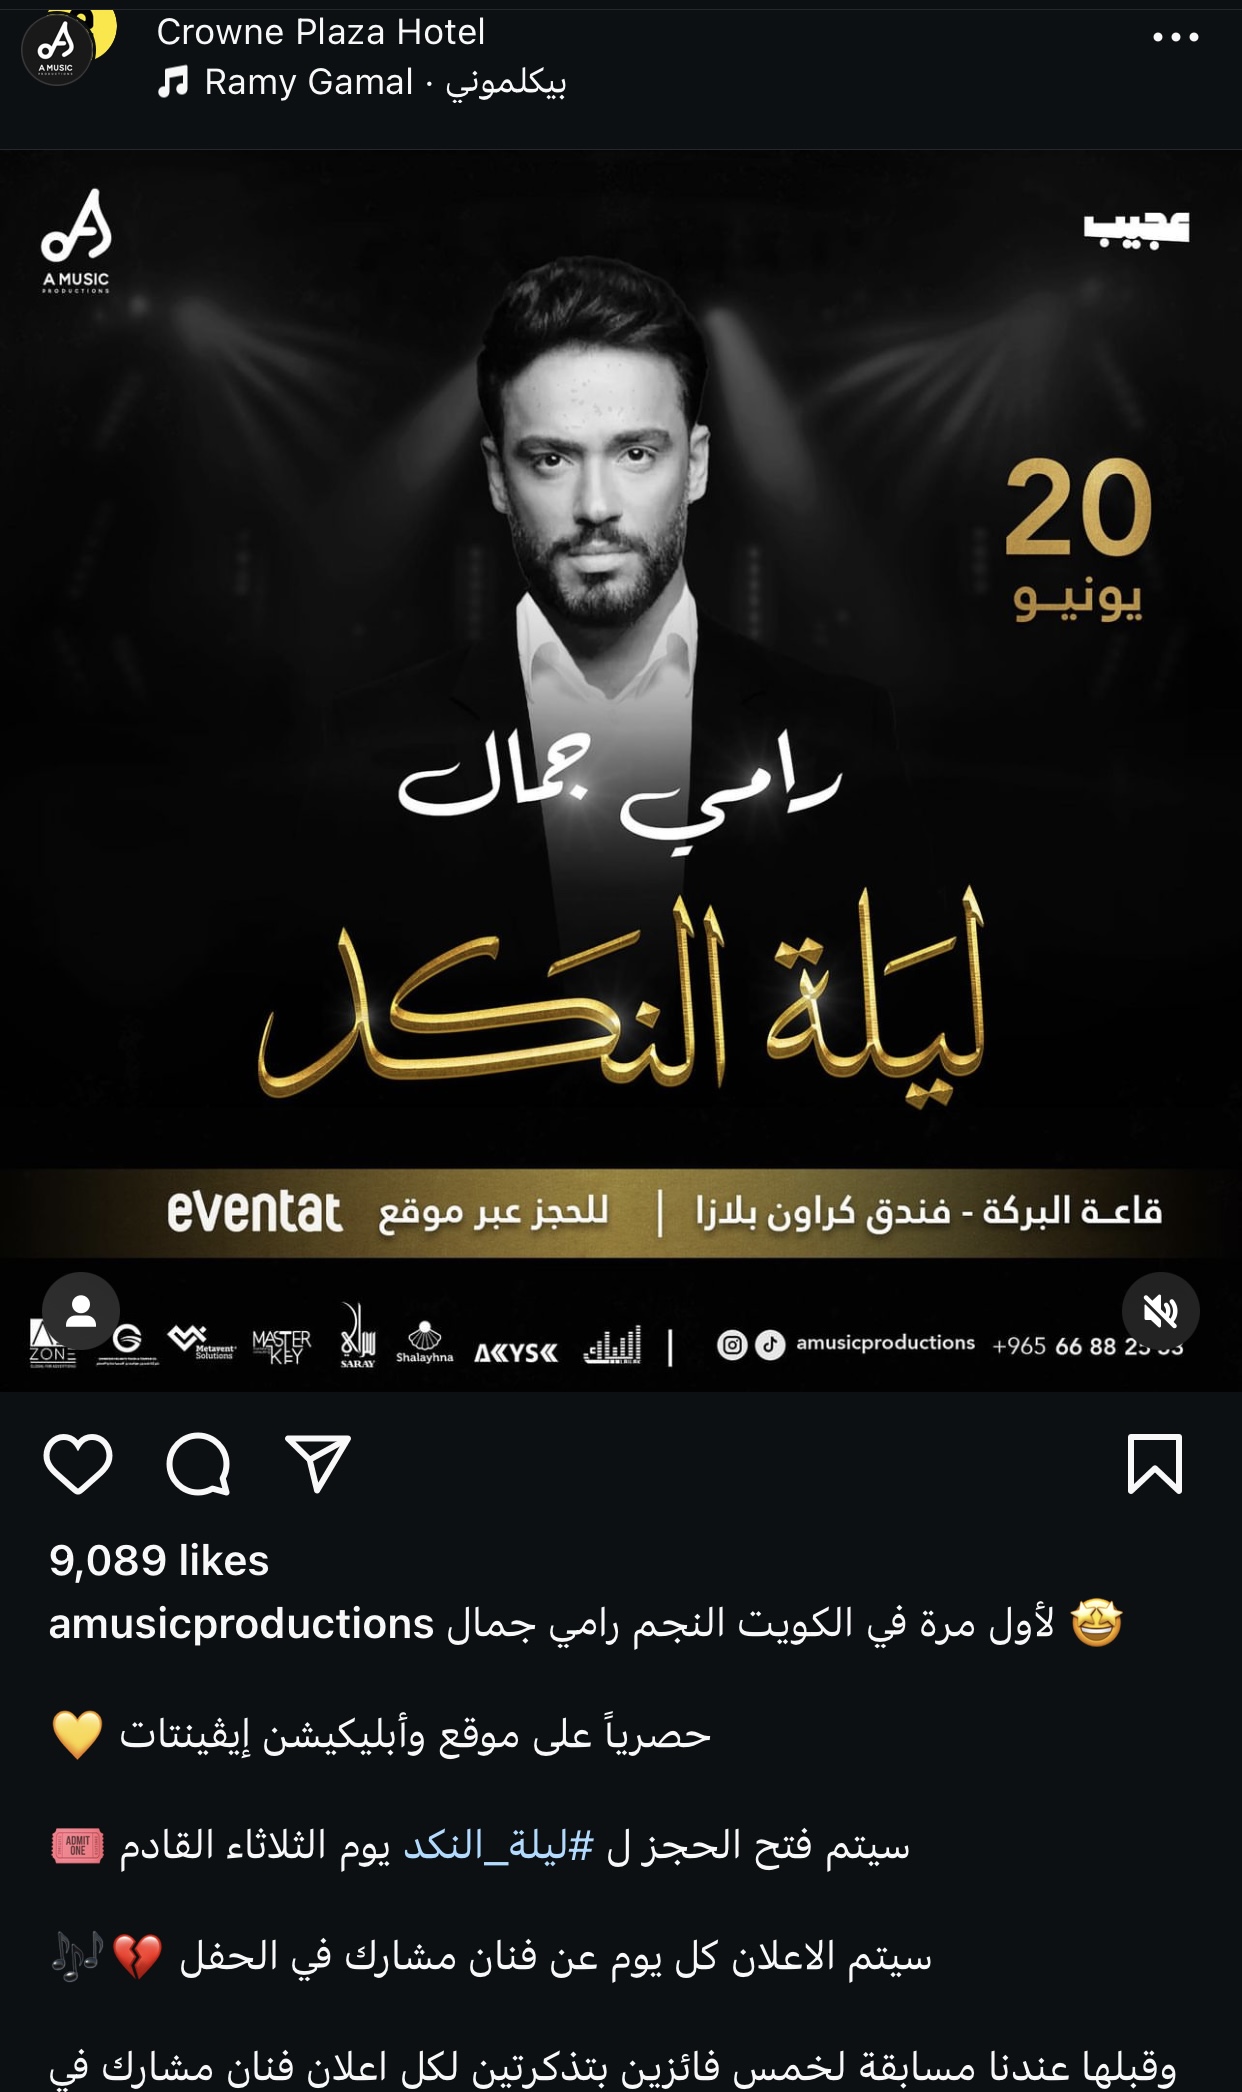 بعد حمادة هلال.. رامي جمال يحيي حفل "ليلة النكد" في الكويت 2